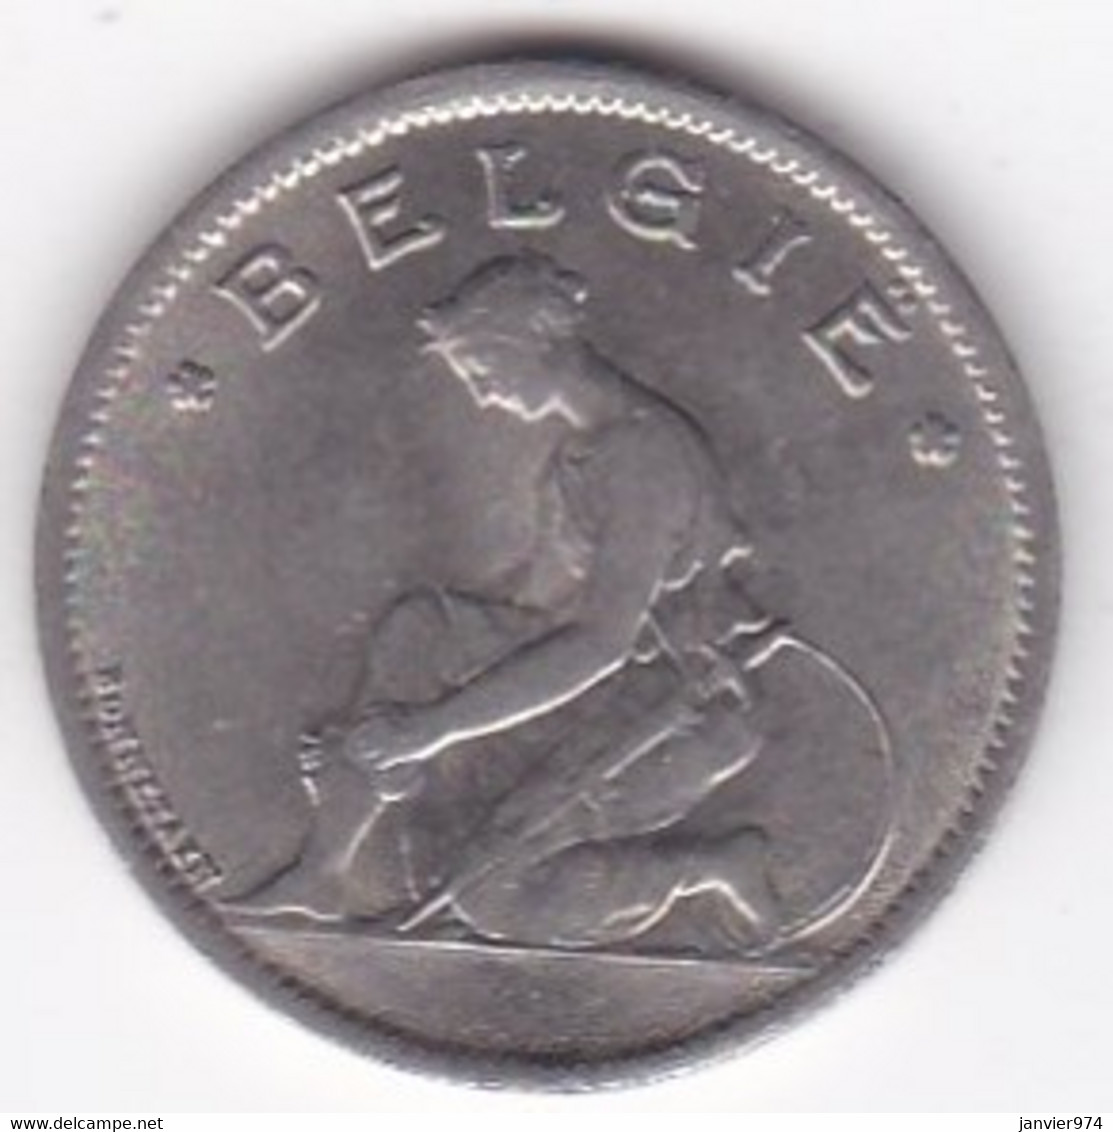 Belgique 1 Franc 1934 Type Bonnetain, Légende Flamande, Albert I , En Nickel , KM# 90 - 1 Franco